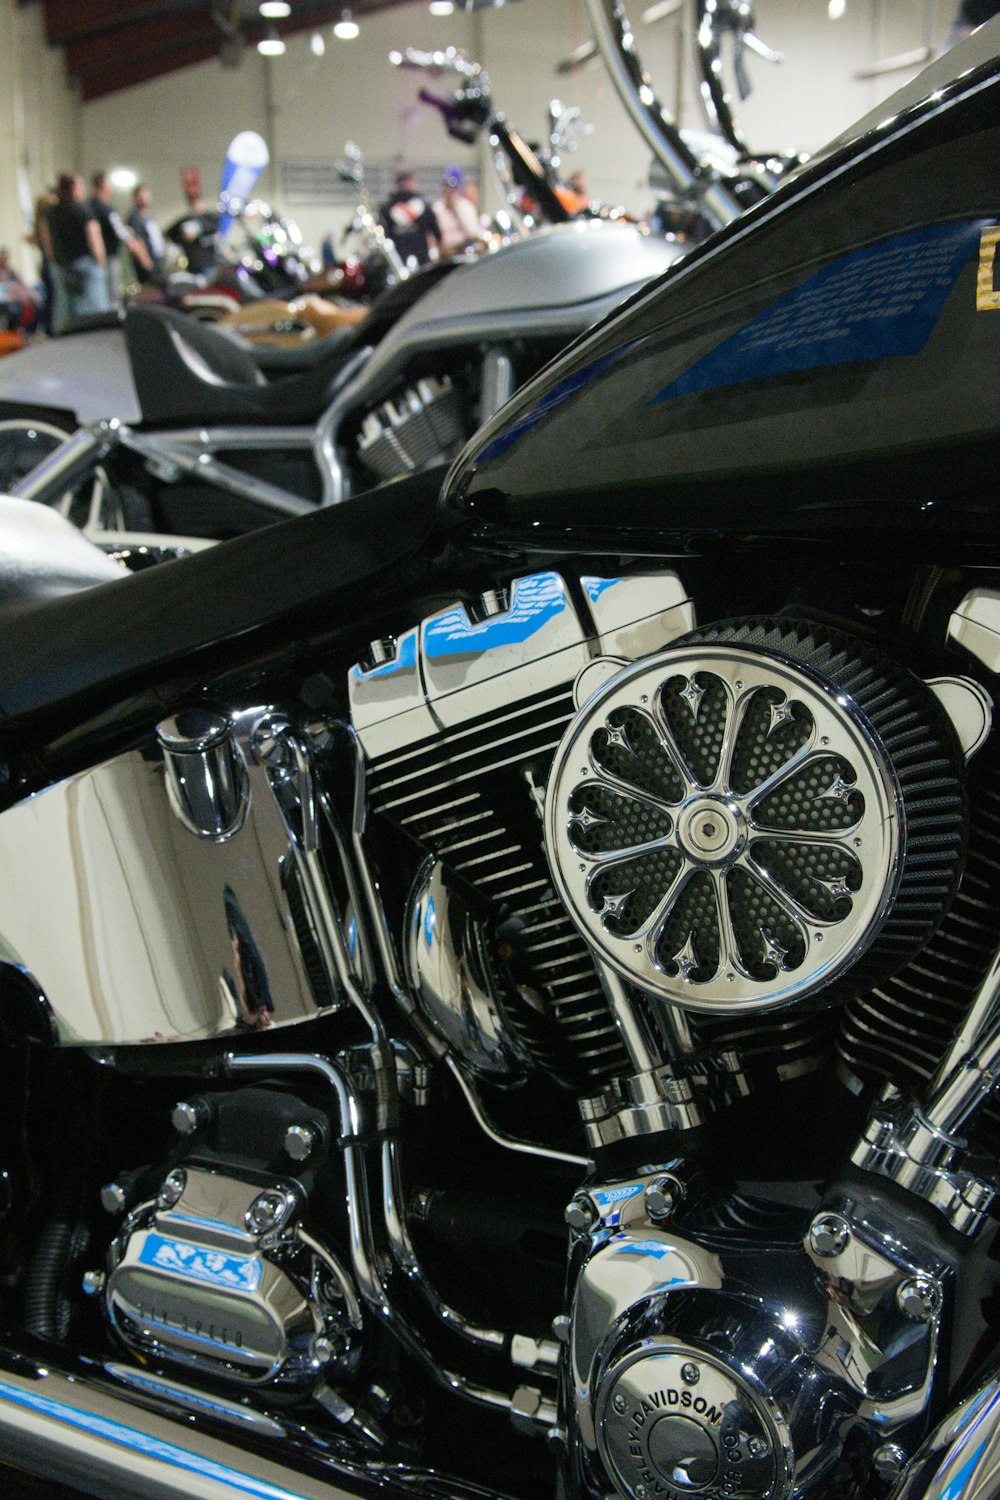 Ein glänzendes schwarzes Motorrad